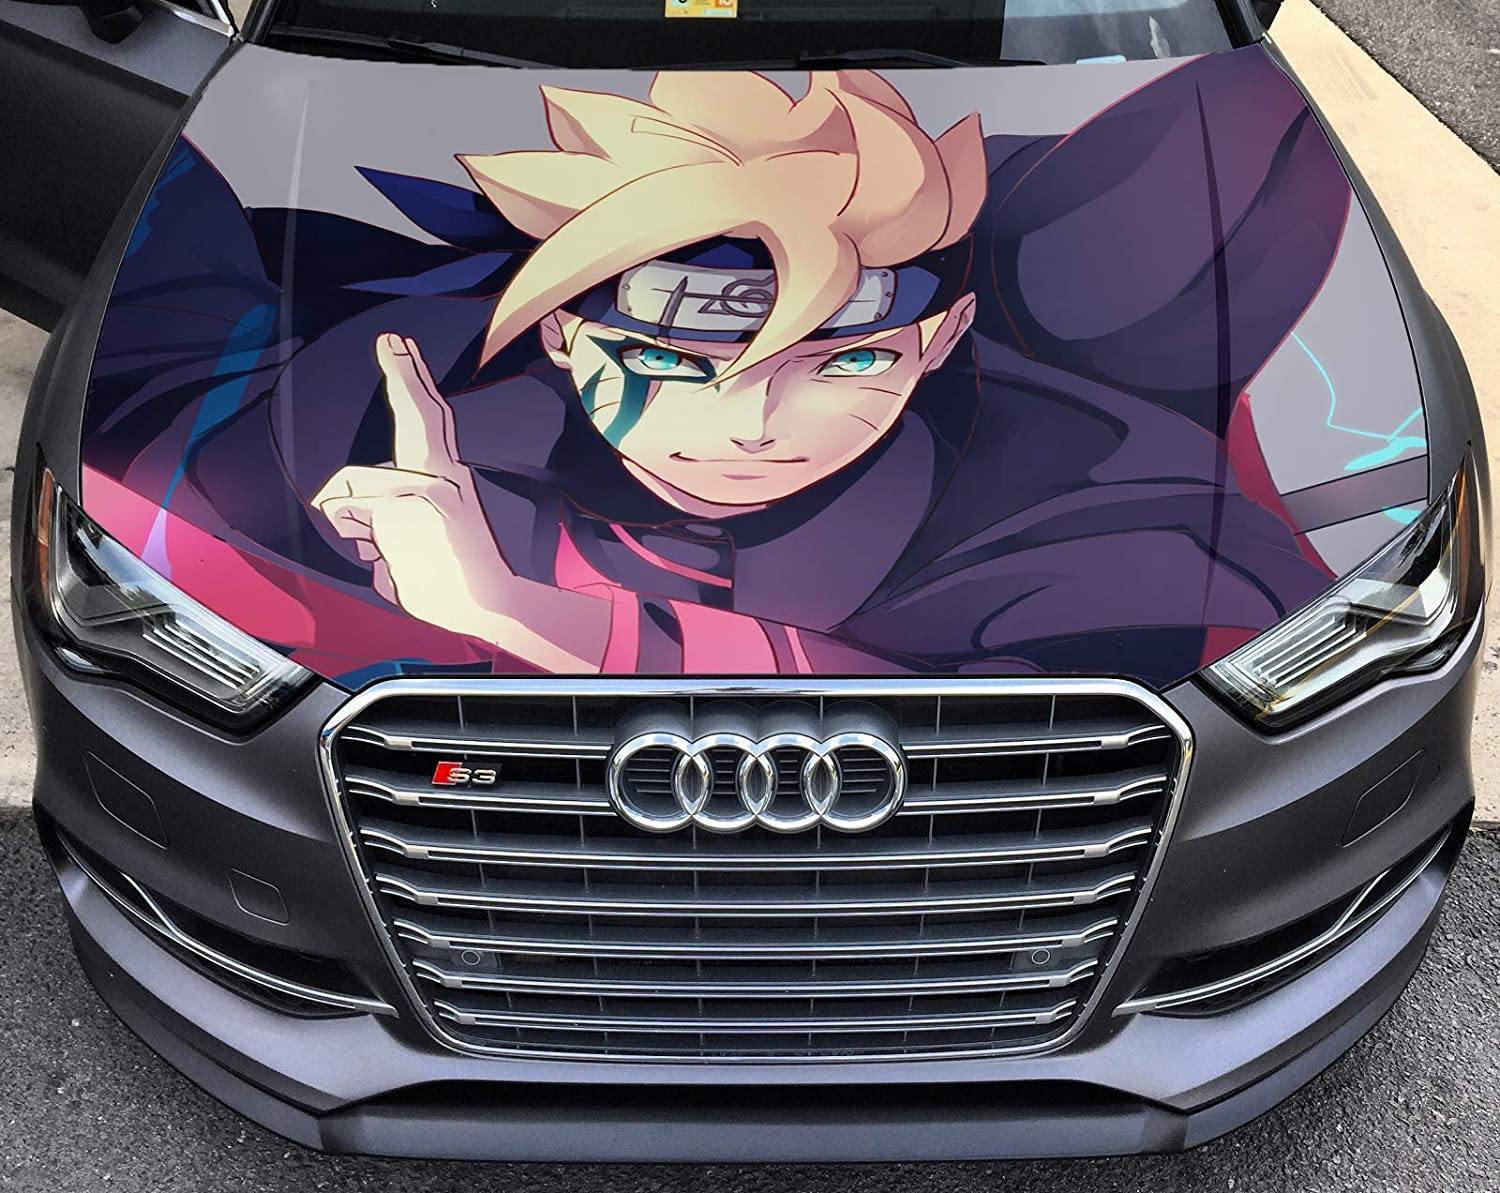 Decal Naruto: Hình ảnh các nhân vật Naruto được in trên decal xe hơi là một ý tưởng tuyệt vời để tạo điểm nhấn cho chiếc xe của bạn. Hãy xem hình ảnh này để tìm cảm hứng cho chiếc xe của mình.